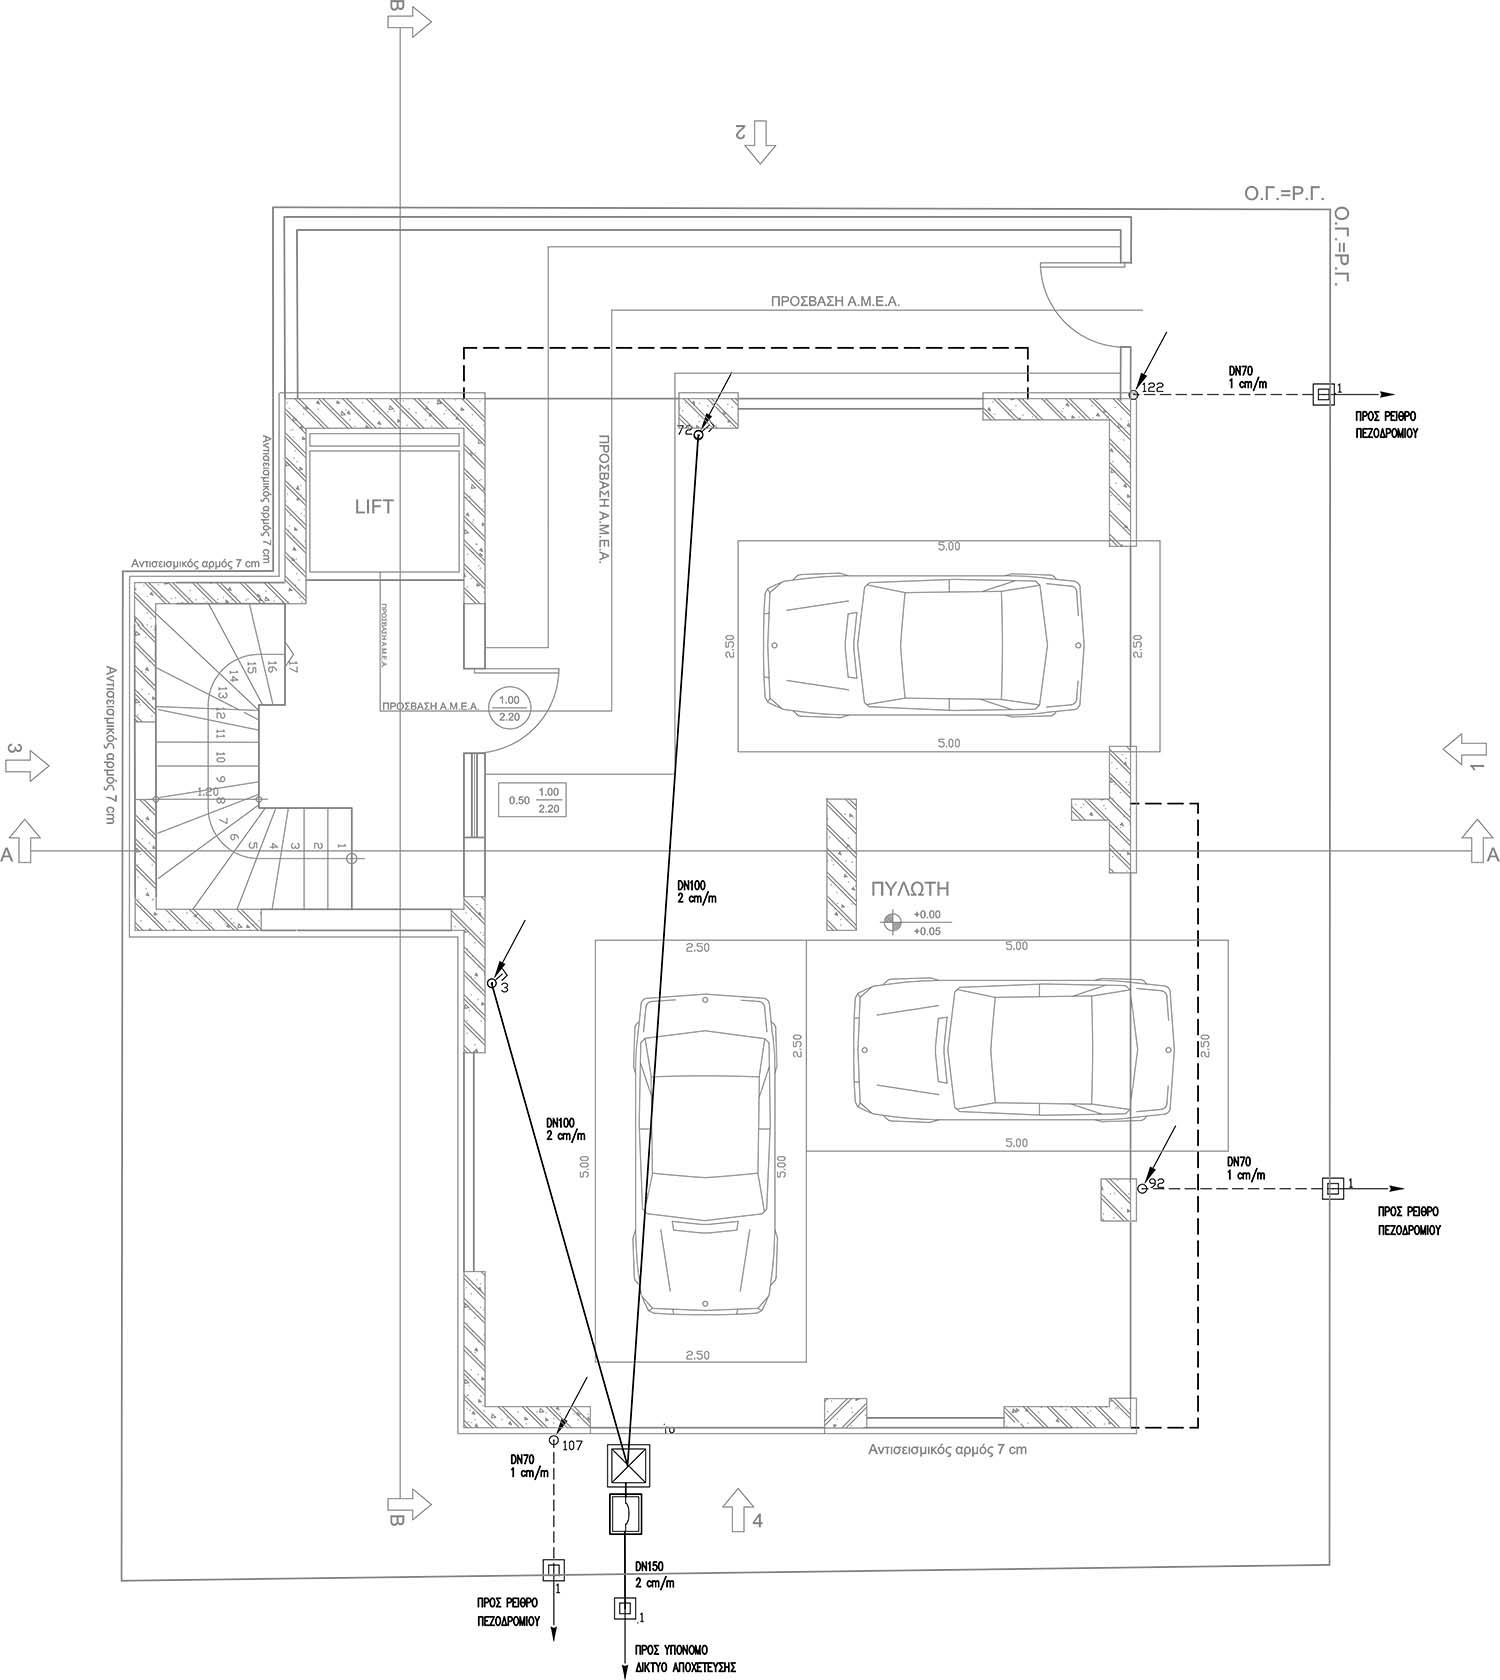 Σχέδιο αποχέτευσης κάτοψης ισογείου πολυκατοικίας από τον ηλεκτρολόγο μηχανικό Νικολαΐδη Παναγιώτη